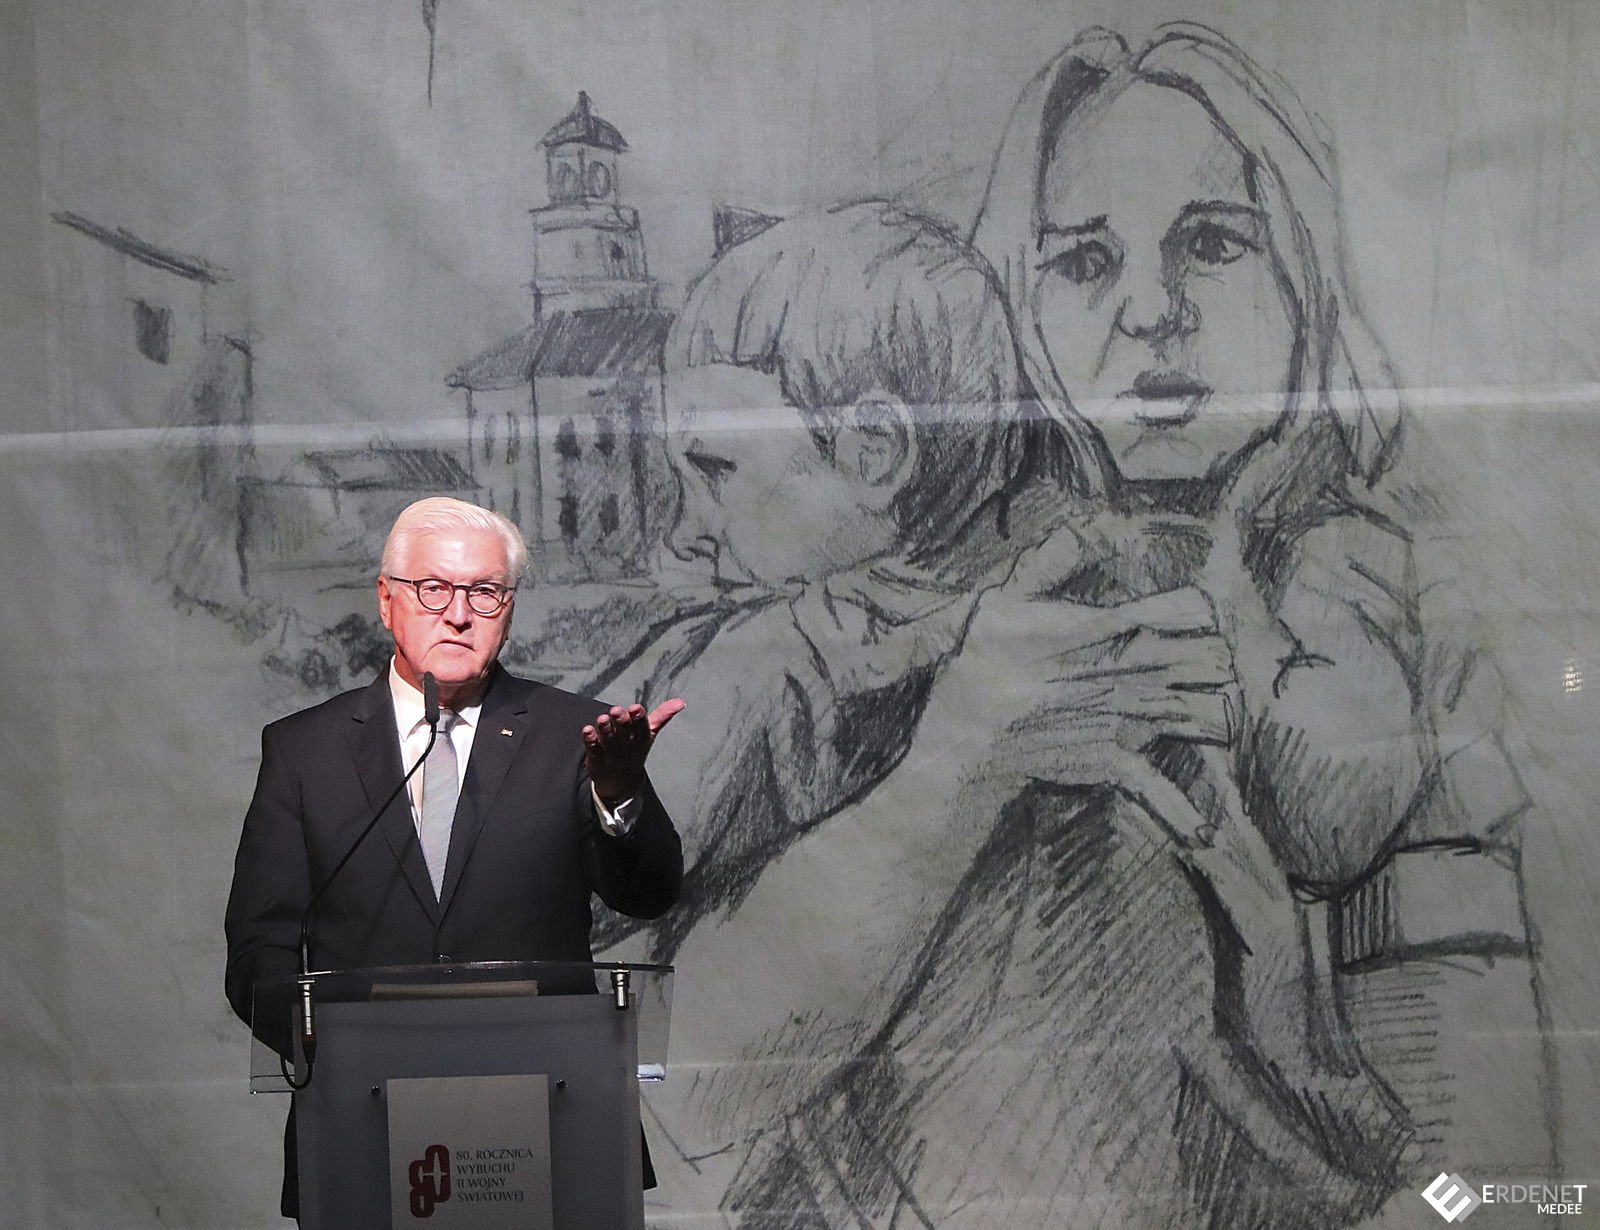 Дэлхийн хоёрдугаар дайн эхэлсэн өдөр Германы ерөнхийлөгч Польшийн ард түмнээс уучлалт гуйлаа